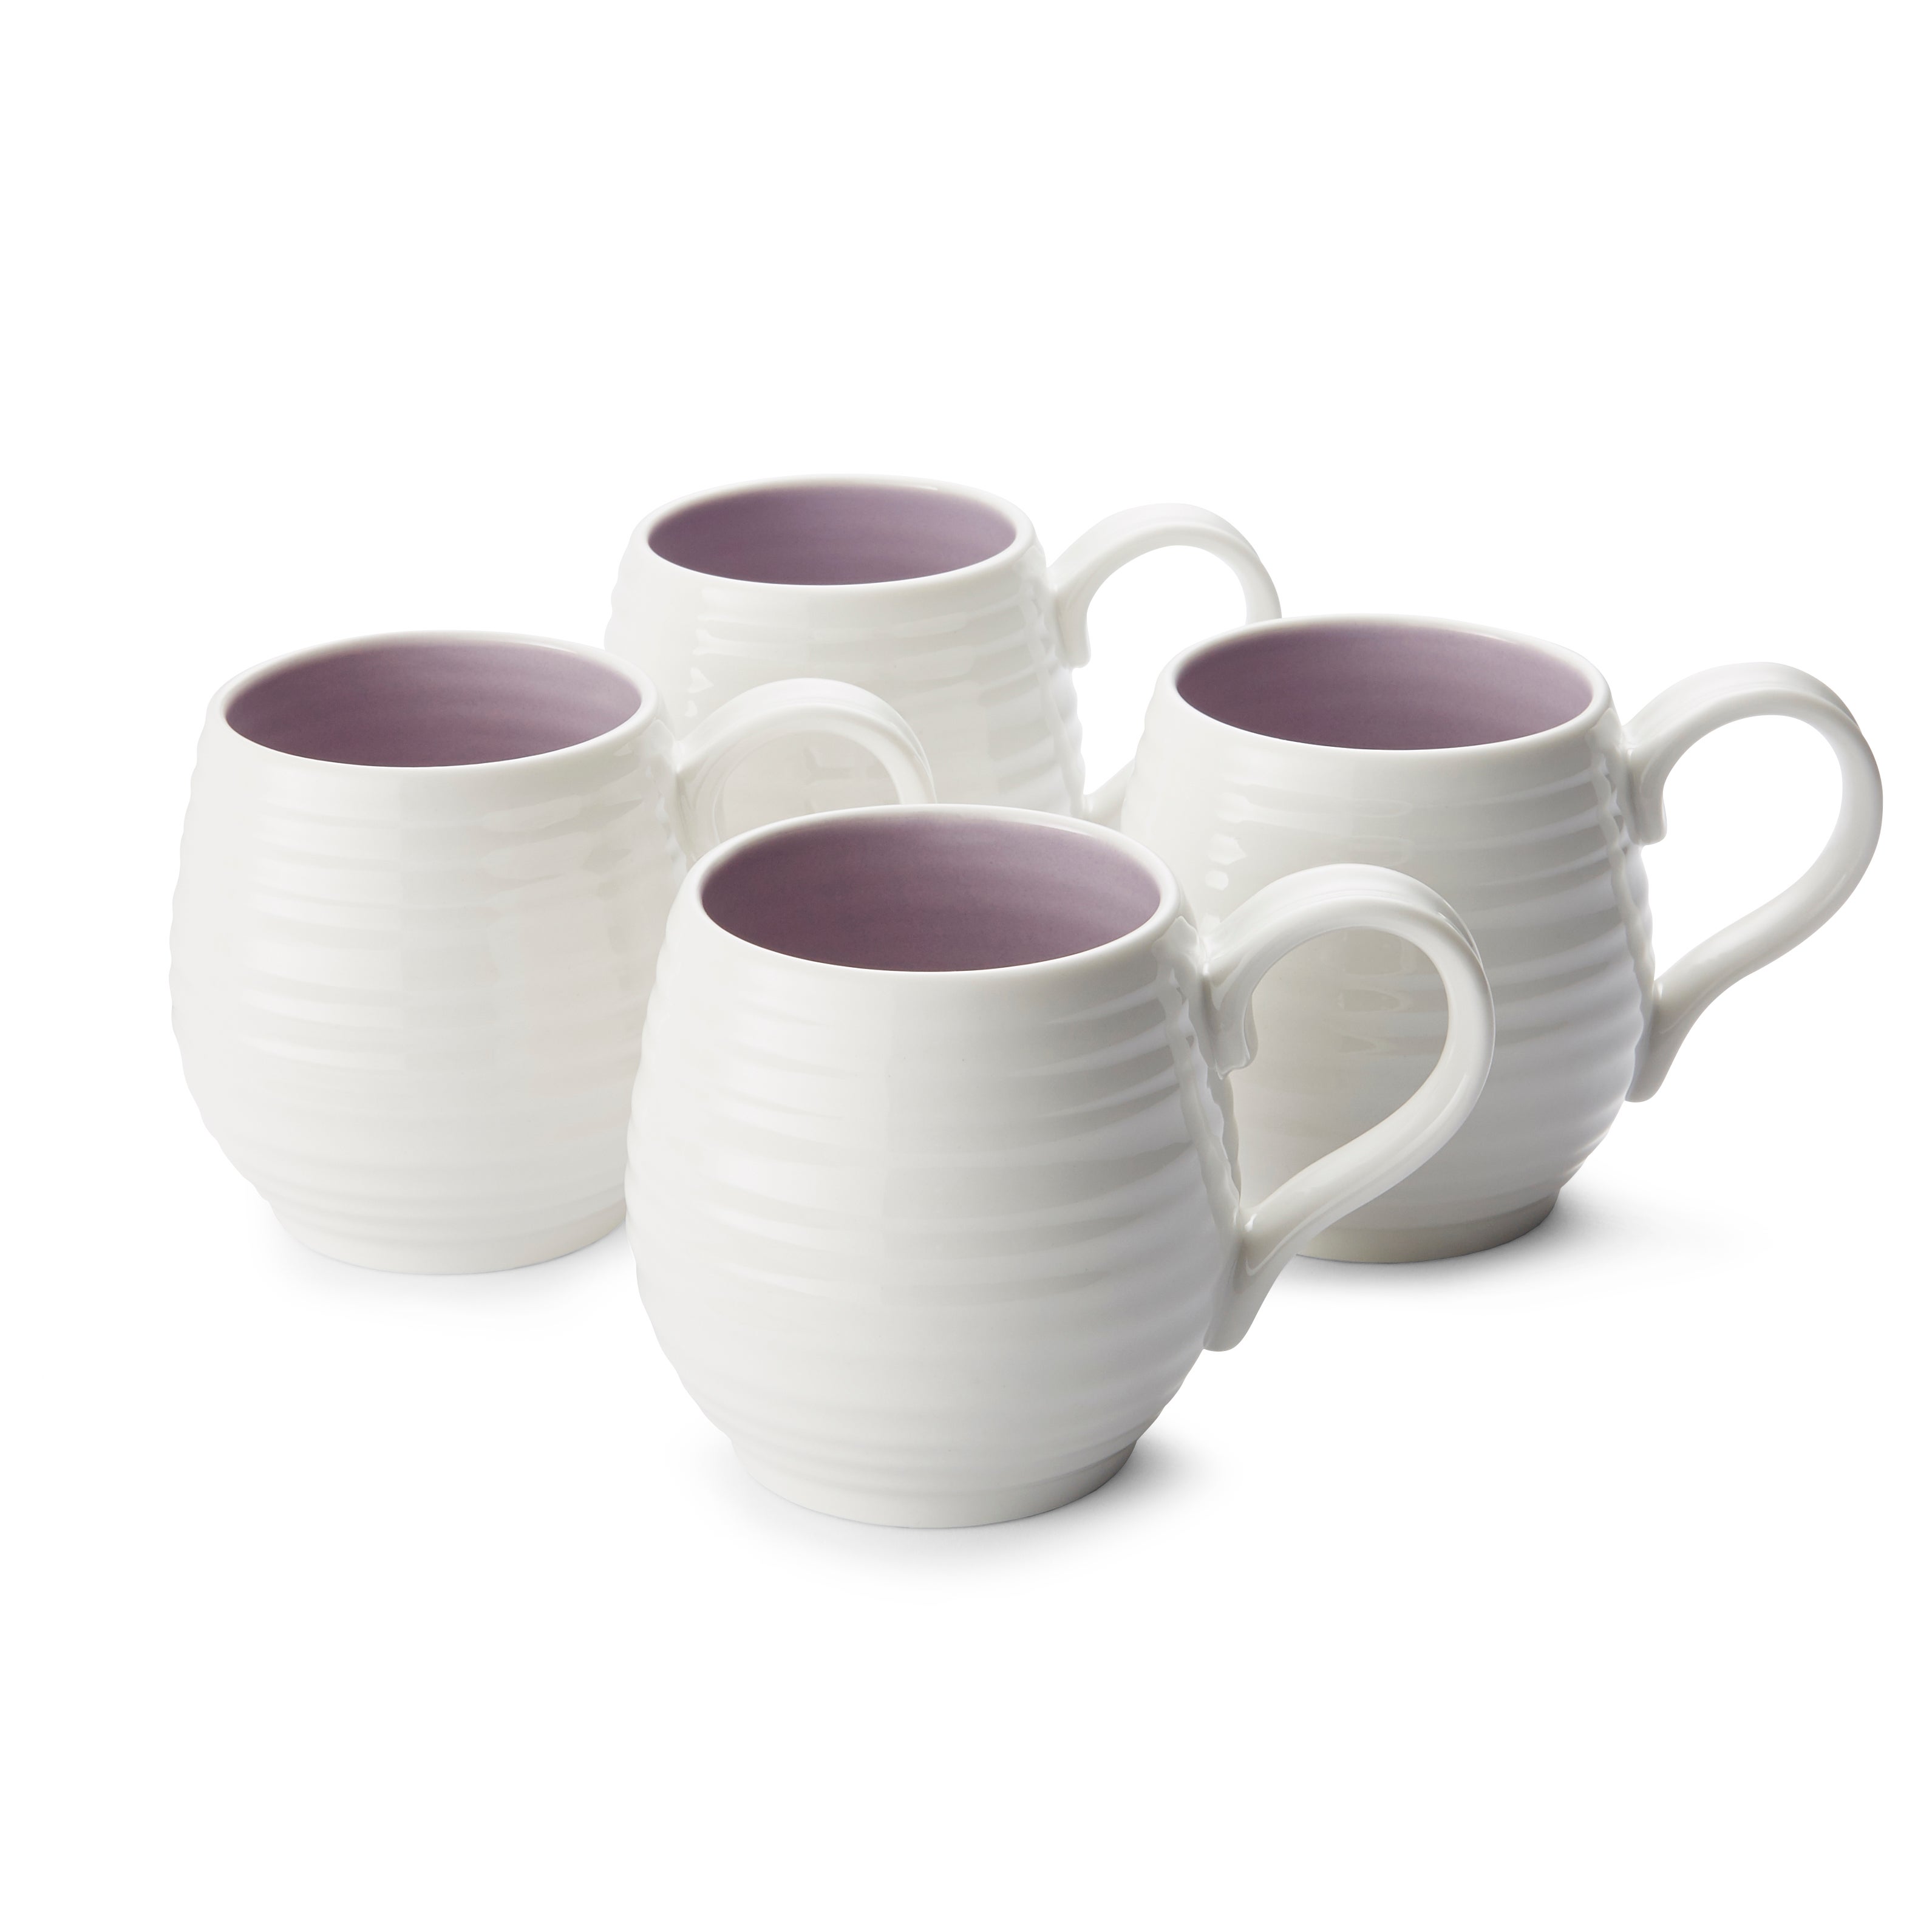 Photos - Mug / Cup Mulberry Set of 4 Sophie Conran for Portmeirion  Honey Pot Mugs White 